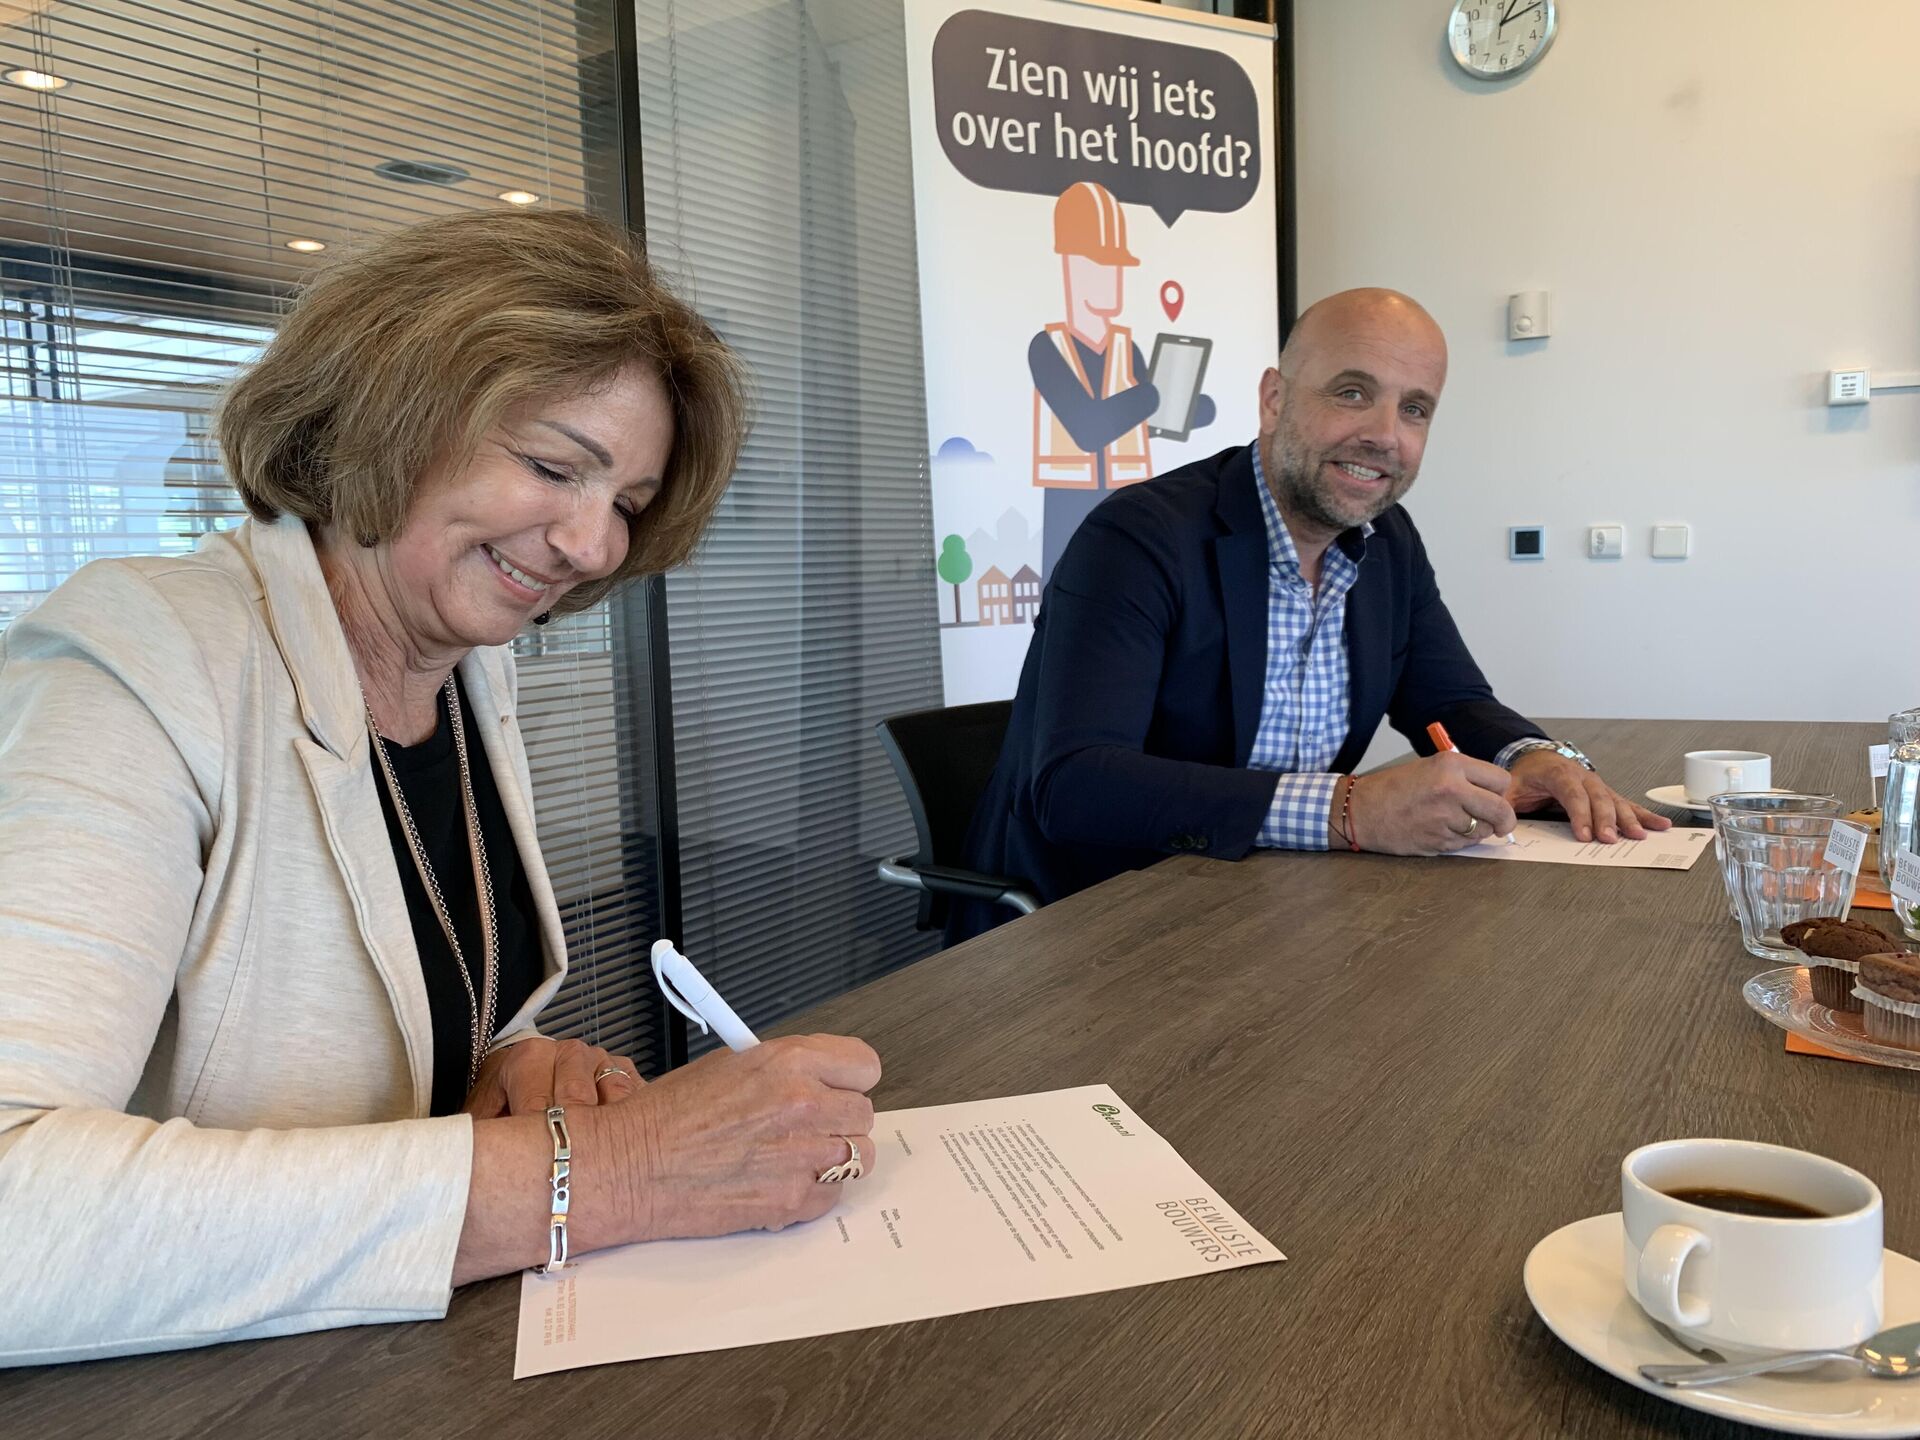 Bnext.nl als eerste recycler aangesloten bij Bewuste Bouwers.